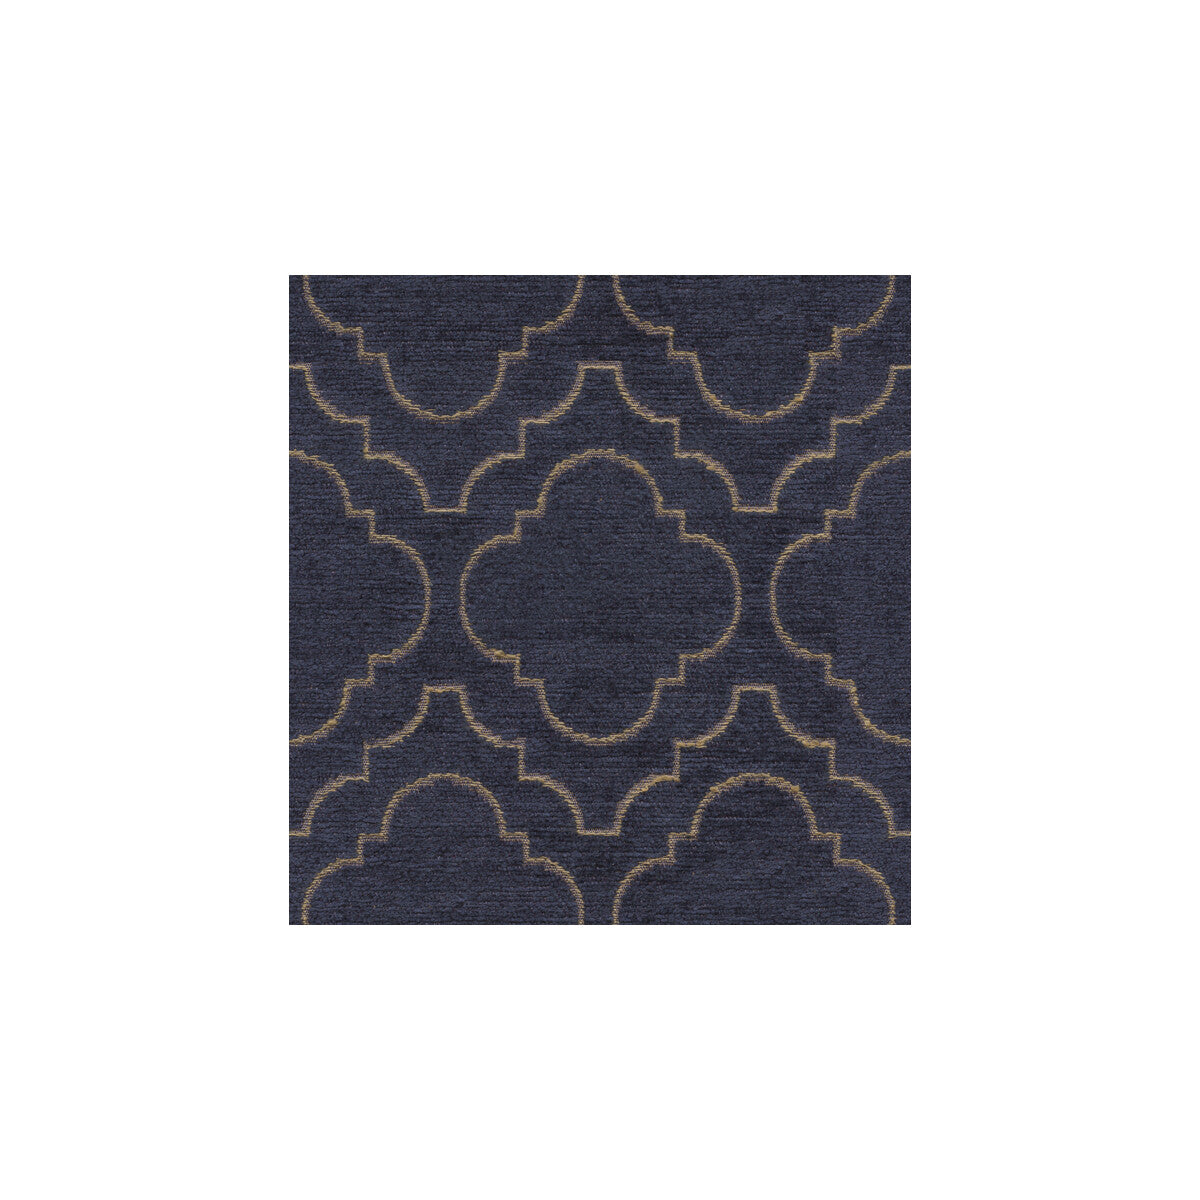 Kravet Design fabric in 31422-5 color - pattern 31422.5.0 - by Kravet Design